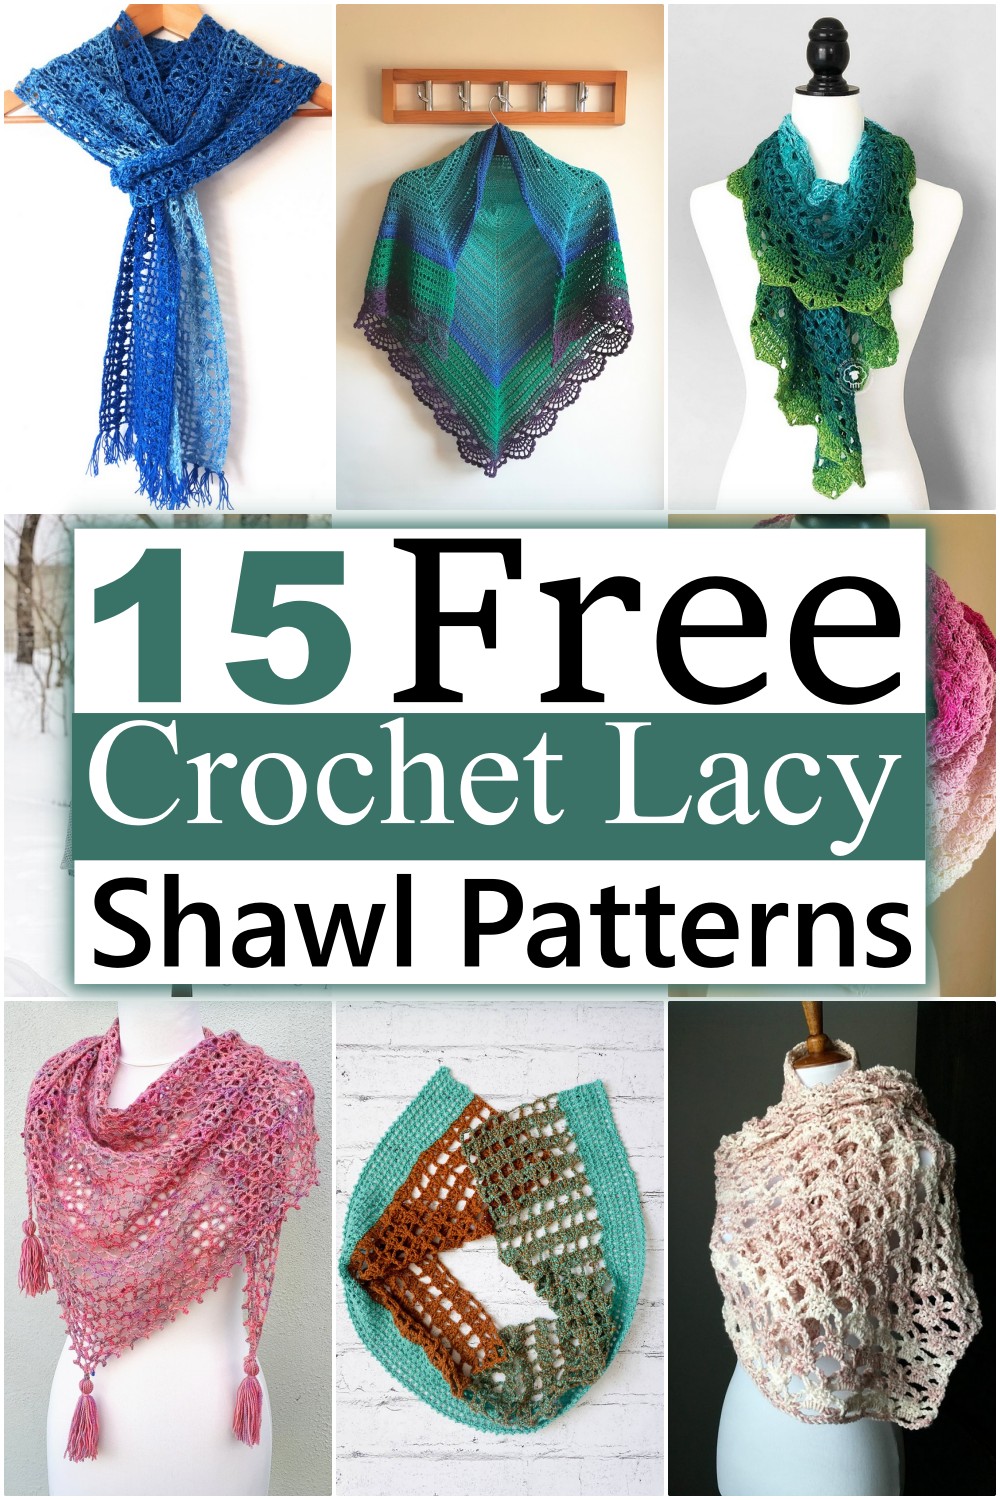 Crochet Lacy Shawl Patterns 